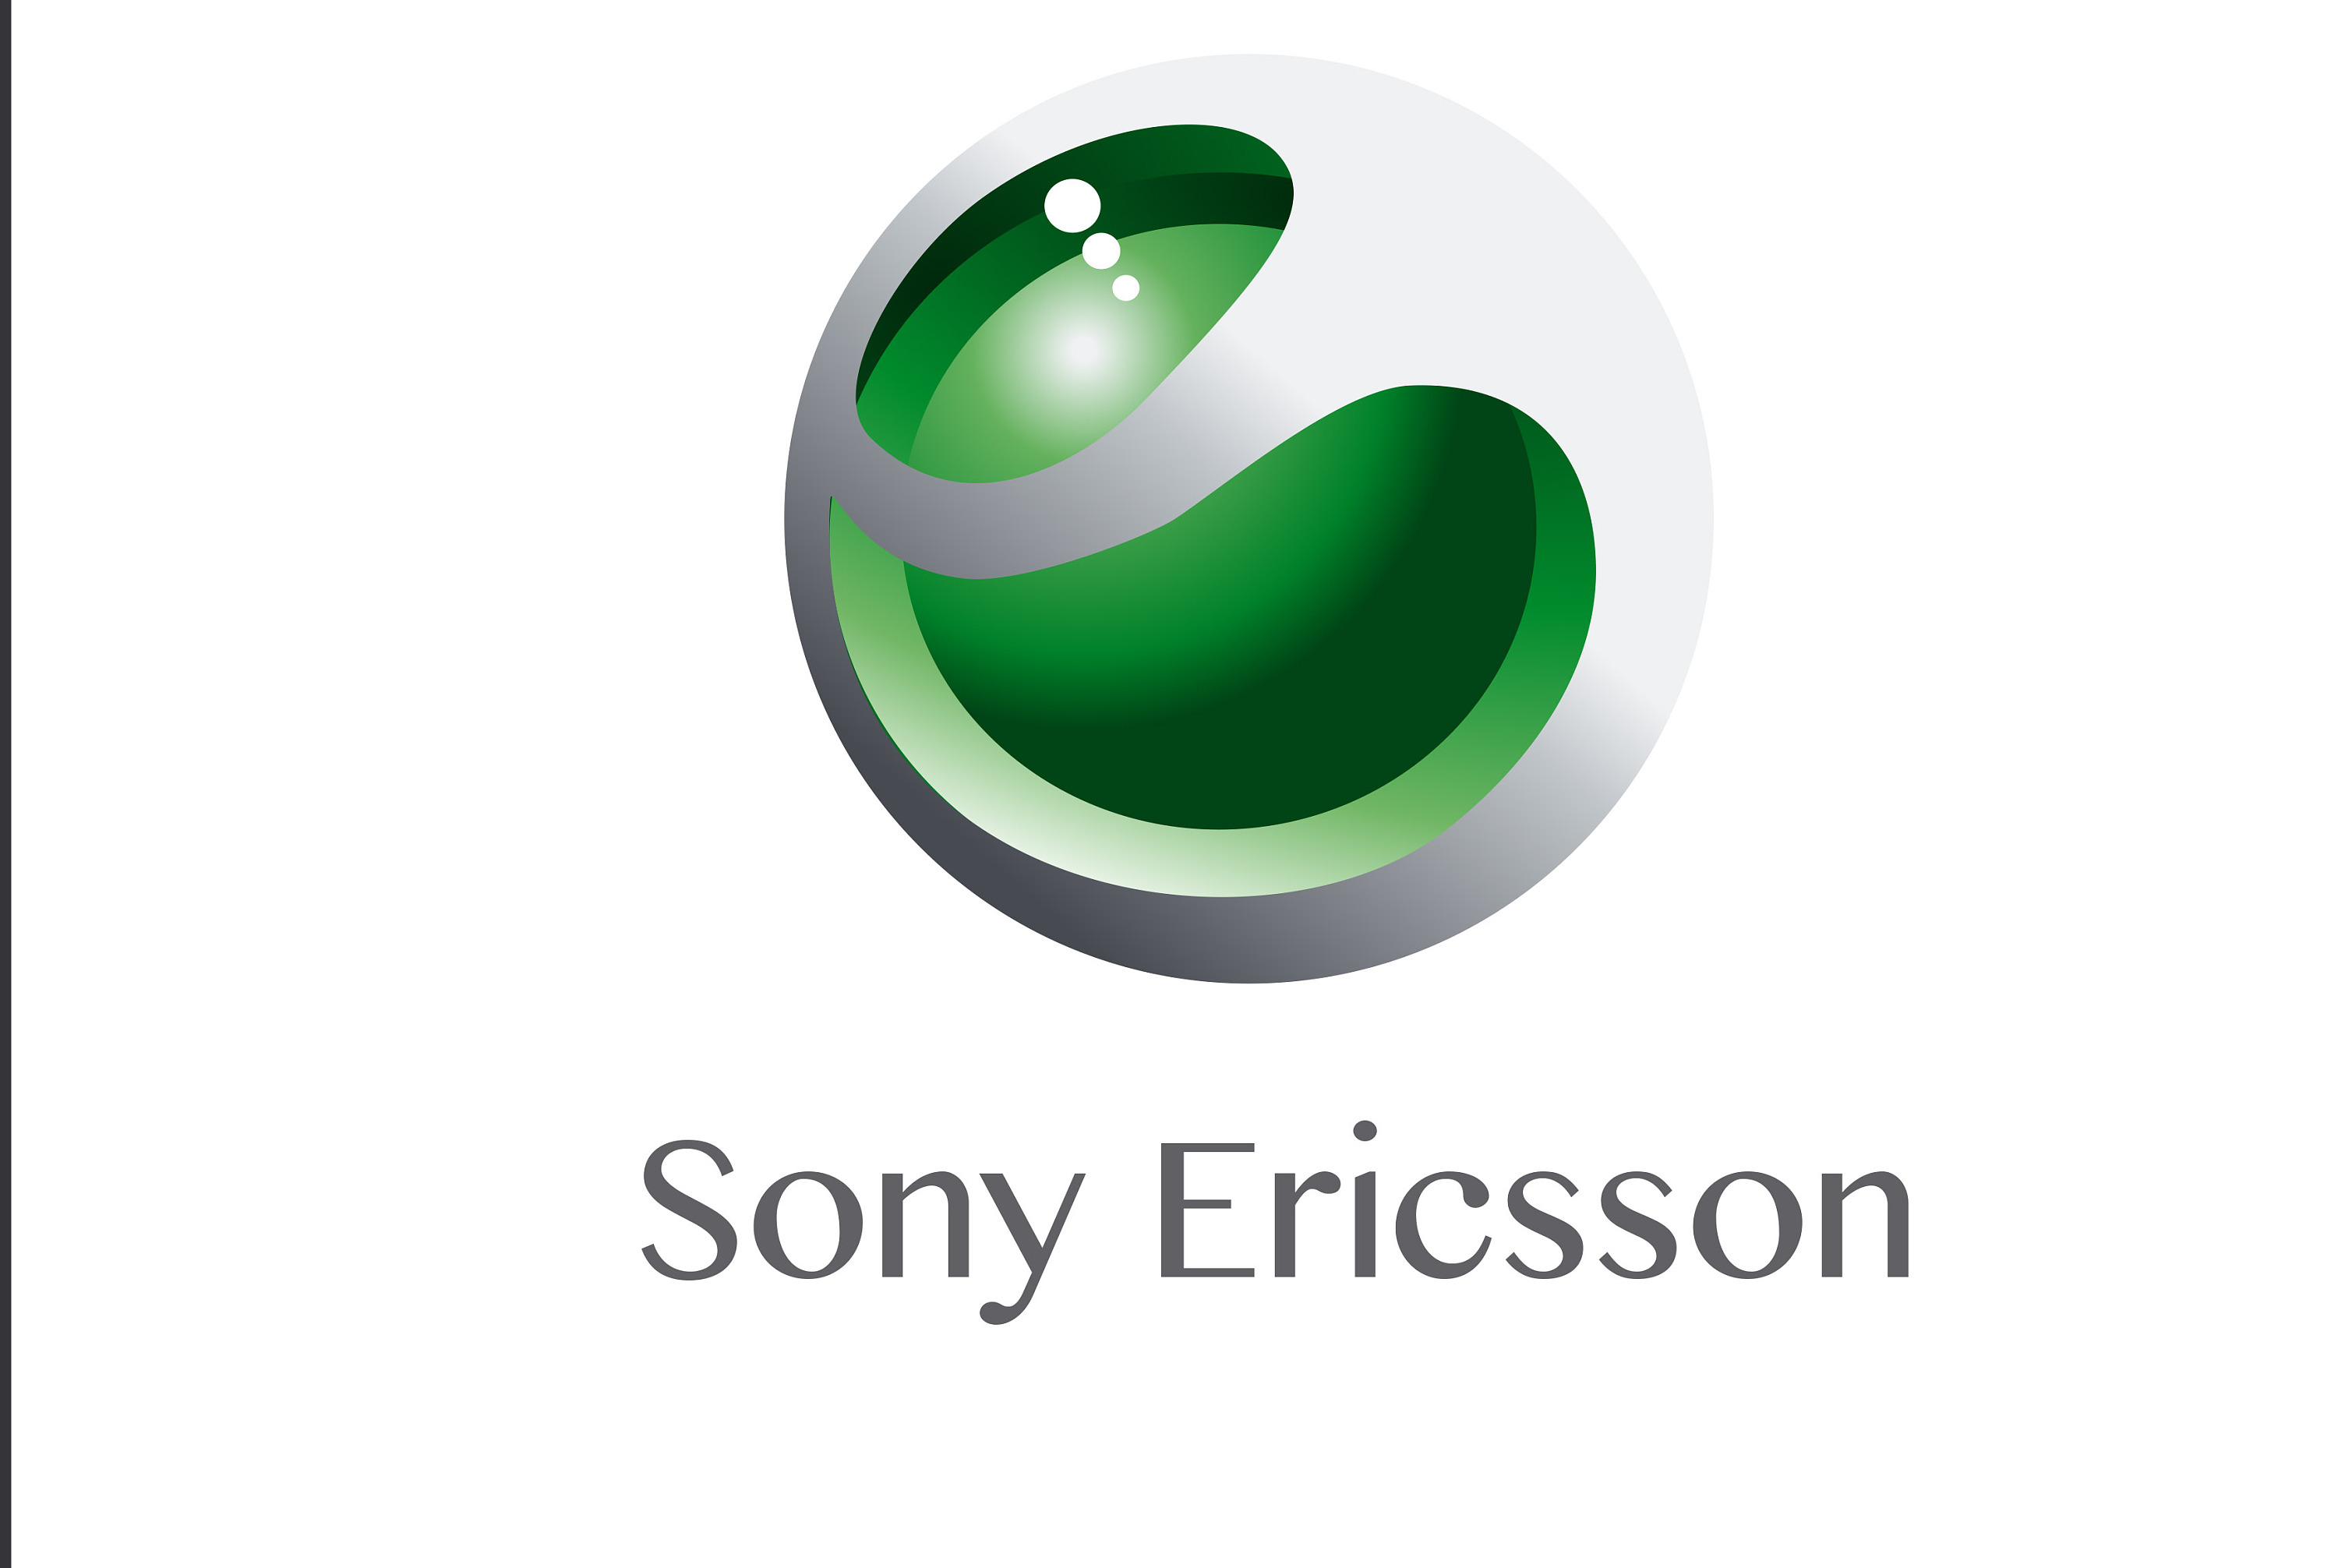 索尼有几种logo图片